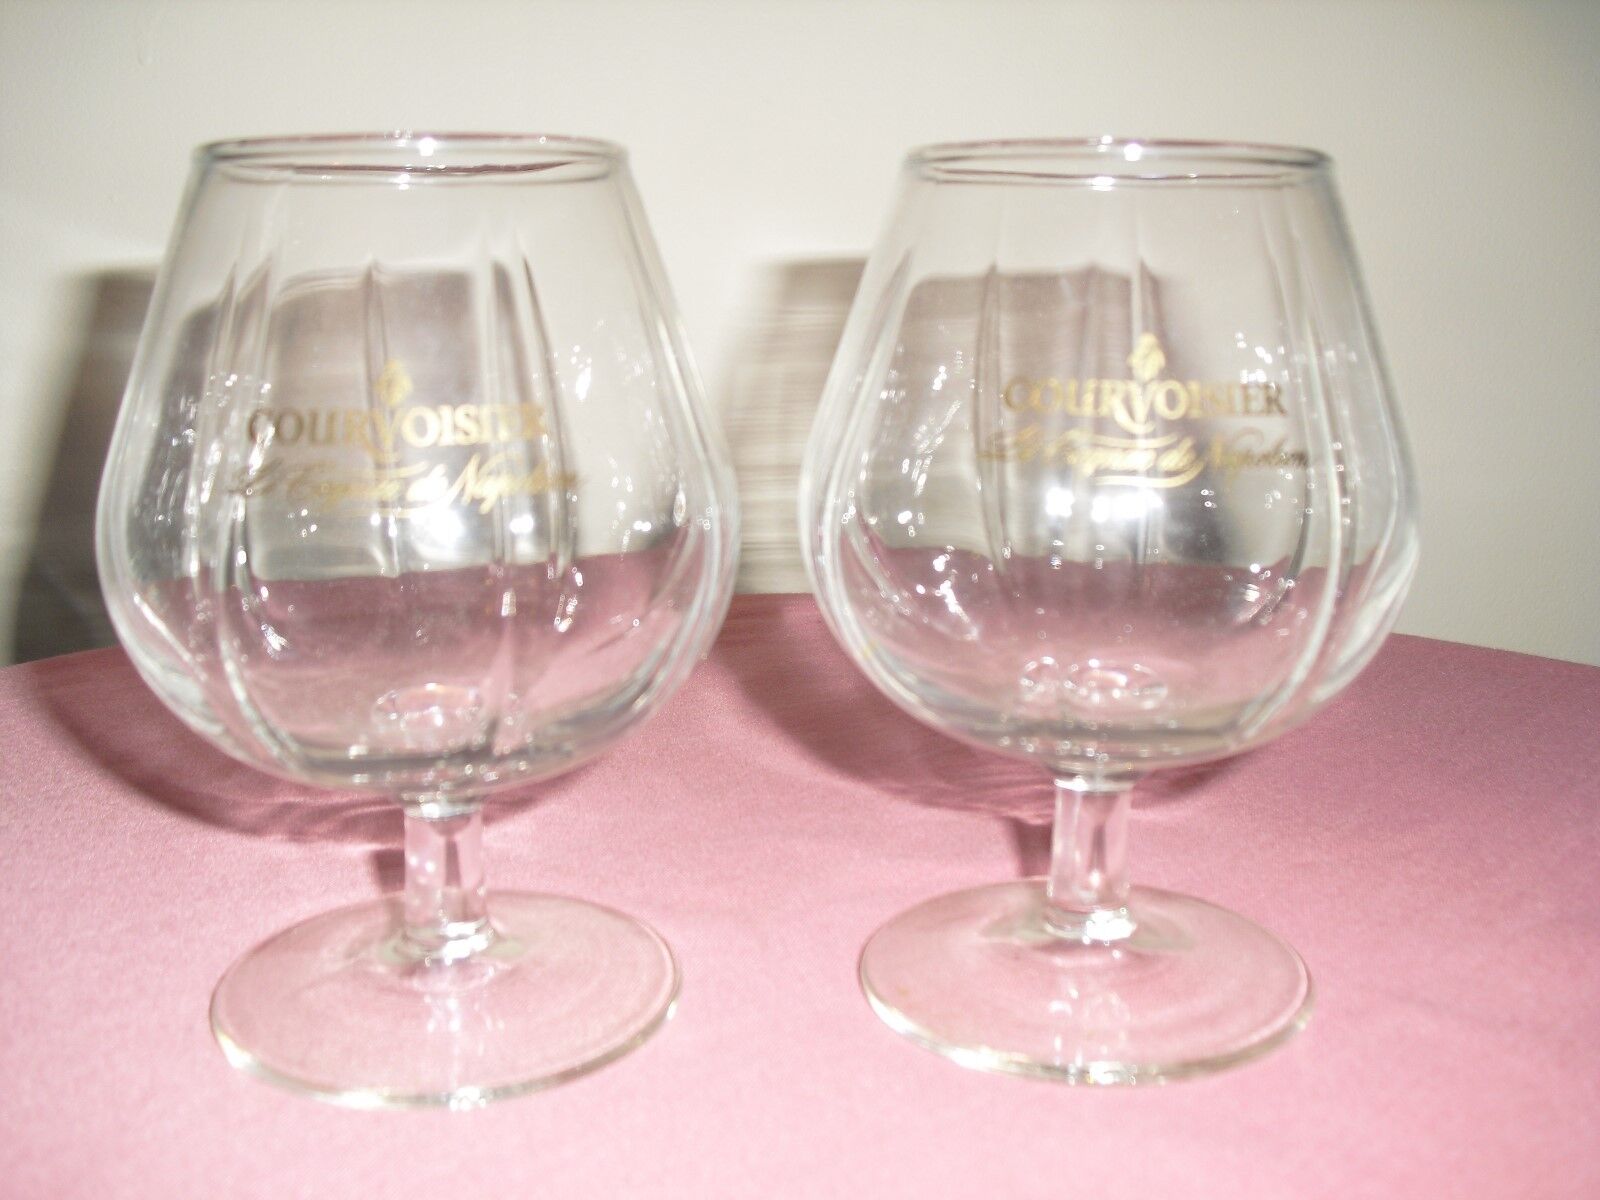 Set of 2 Courvoisier Le Cognac De Napoleon Liquor Brandy Cognac Snifters Glasses